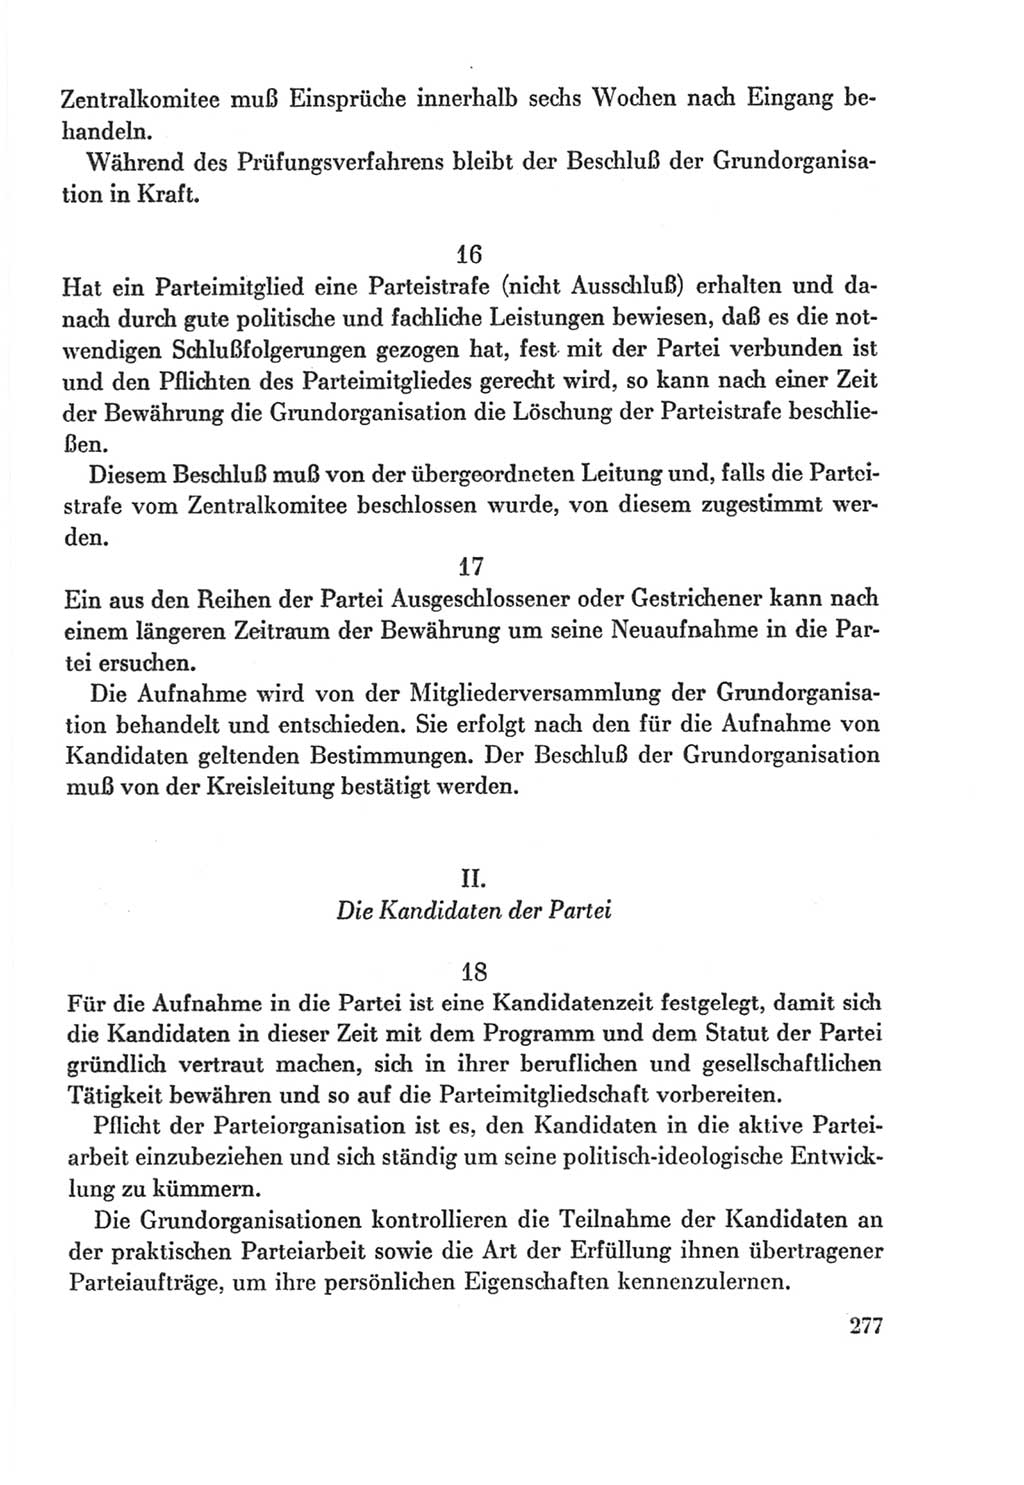 Protokoll der Verhandlungen des Ⅸ. Parteitages der Sozialistischen Einheitspartei Deutschlands (SED) [Deutsche Demokratische Republik (DDR)] 1976, Band 2, Seite 277 (Prot. Verh. Ⅸ. PT SED DDR 1976, Bd. 2, S. 277)